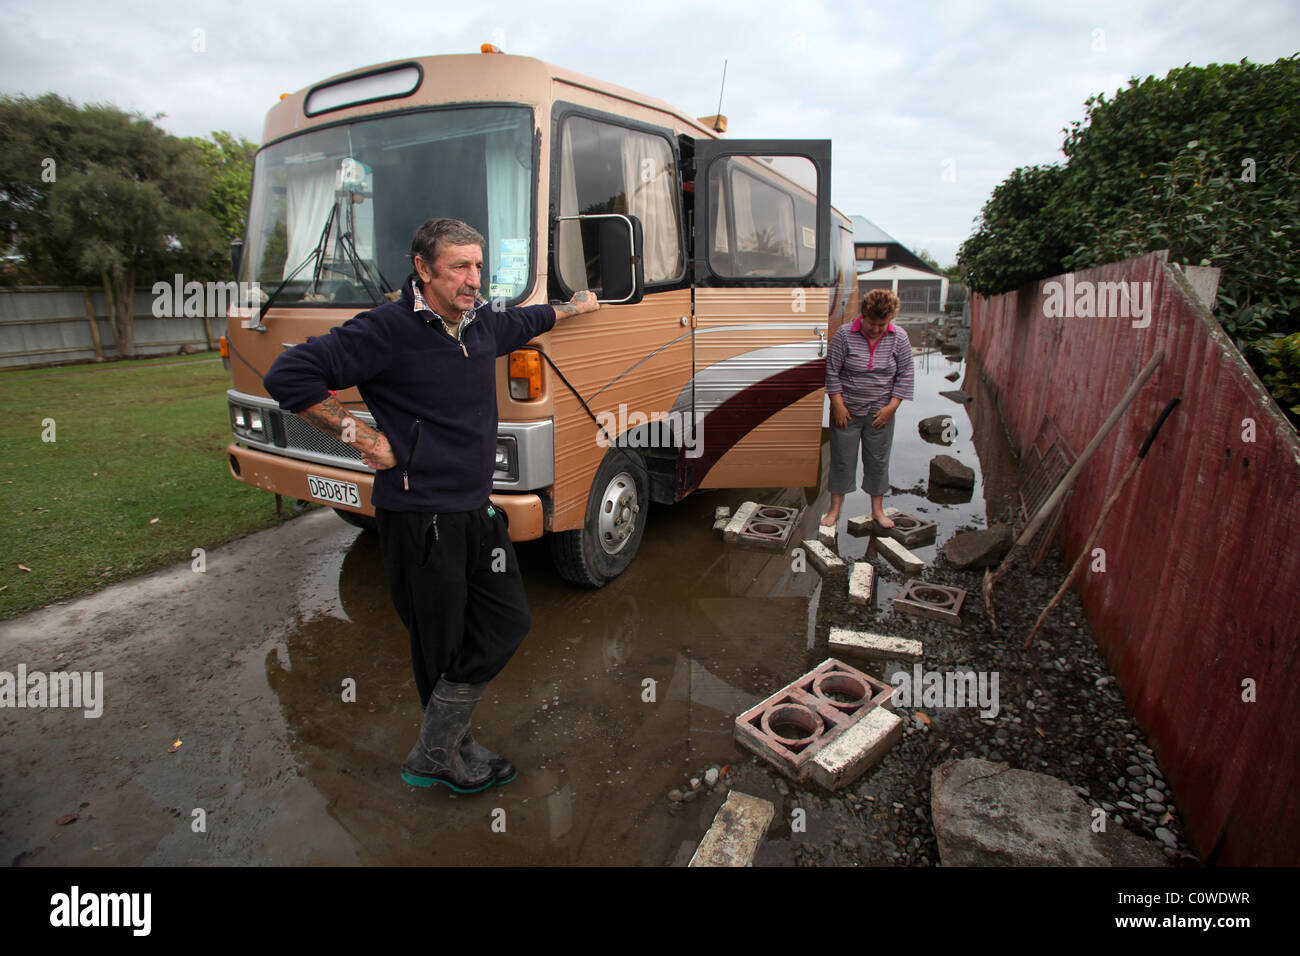 Mike e Dawn Lewis che vivono nella loro casa mobile in corrispondenza di loro proprietà a Bexley, Christchurch, dopo il 6.3 terremoto di magnitudine Foto Stock